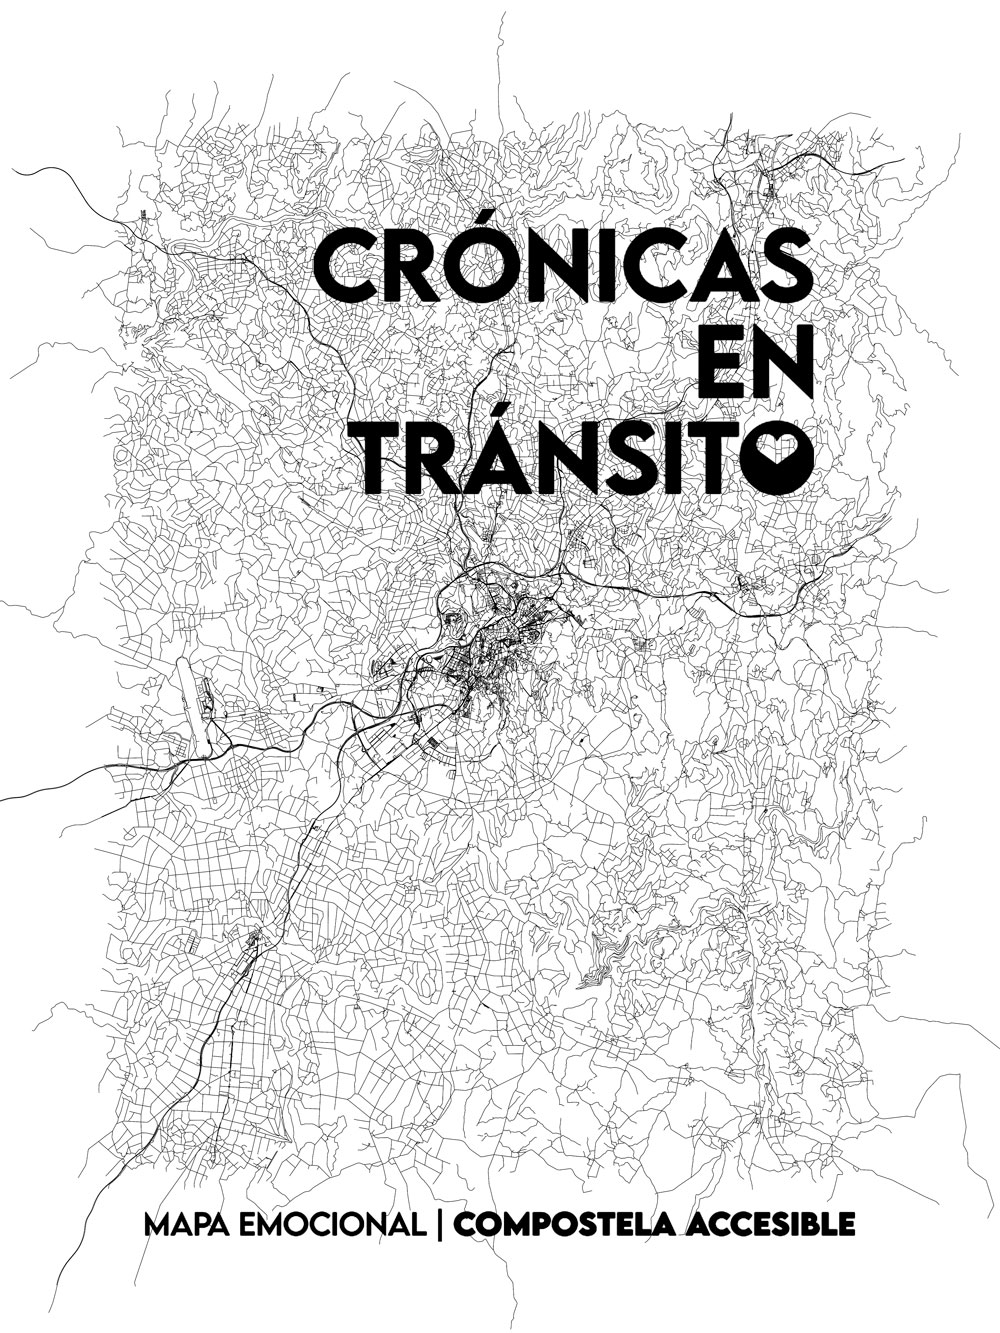 Dibujo del mapa de Santiago con las letras Crónicas en Tránsito, Mapa Emocional Compostela accesible, que se pueden leer sobre el mismo.